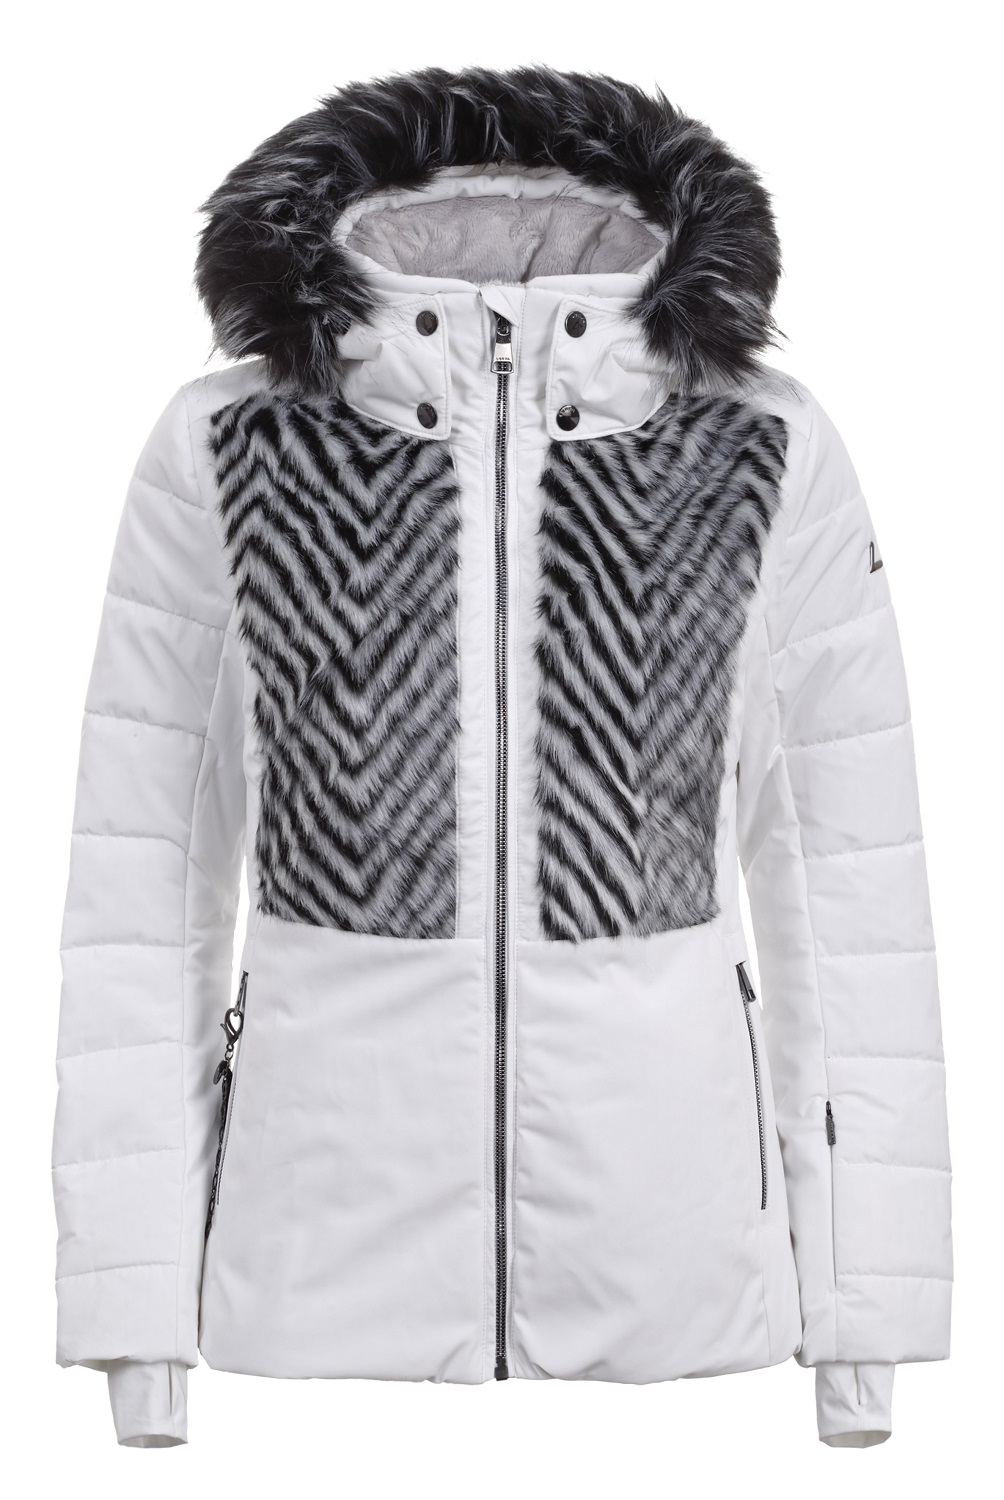 Dámská luxusní lyžařská bunda Luhta Ellola bílá